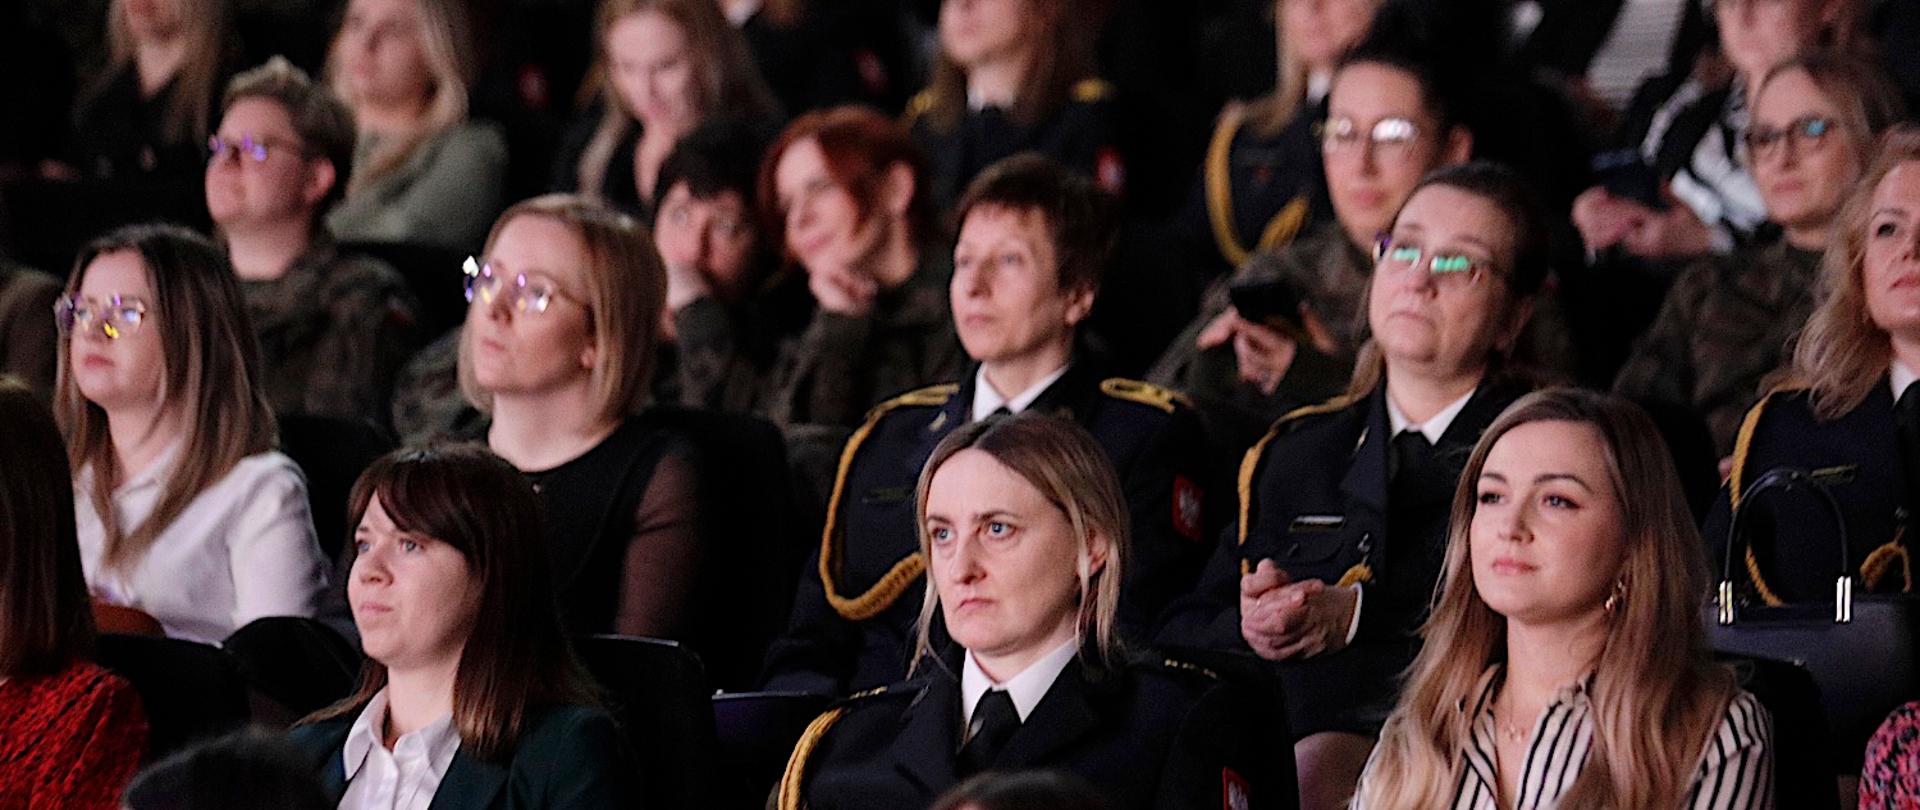 Na zdjęciu kobiety w mundurach na publiczności.